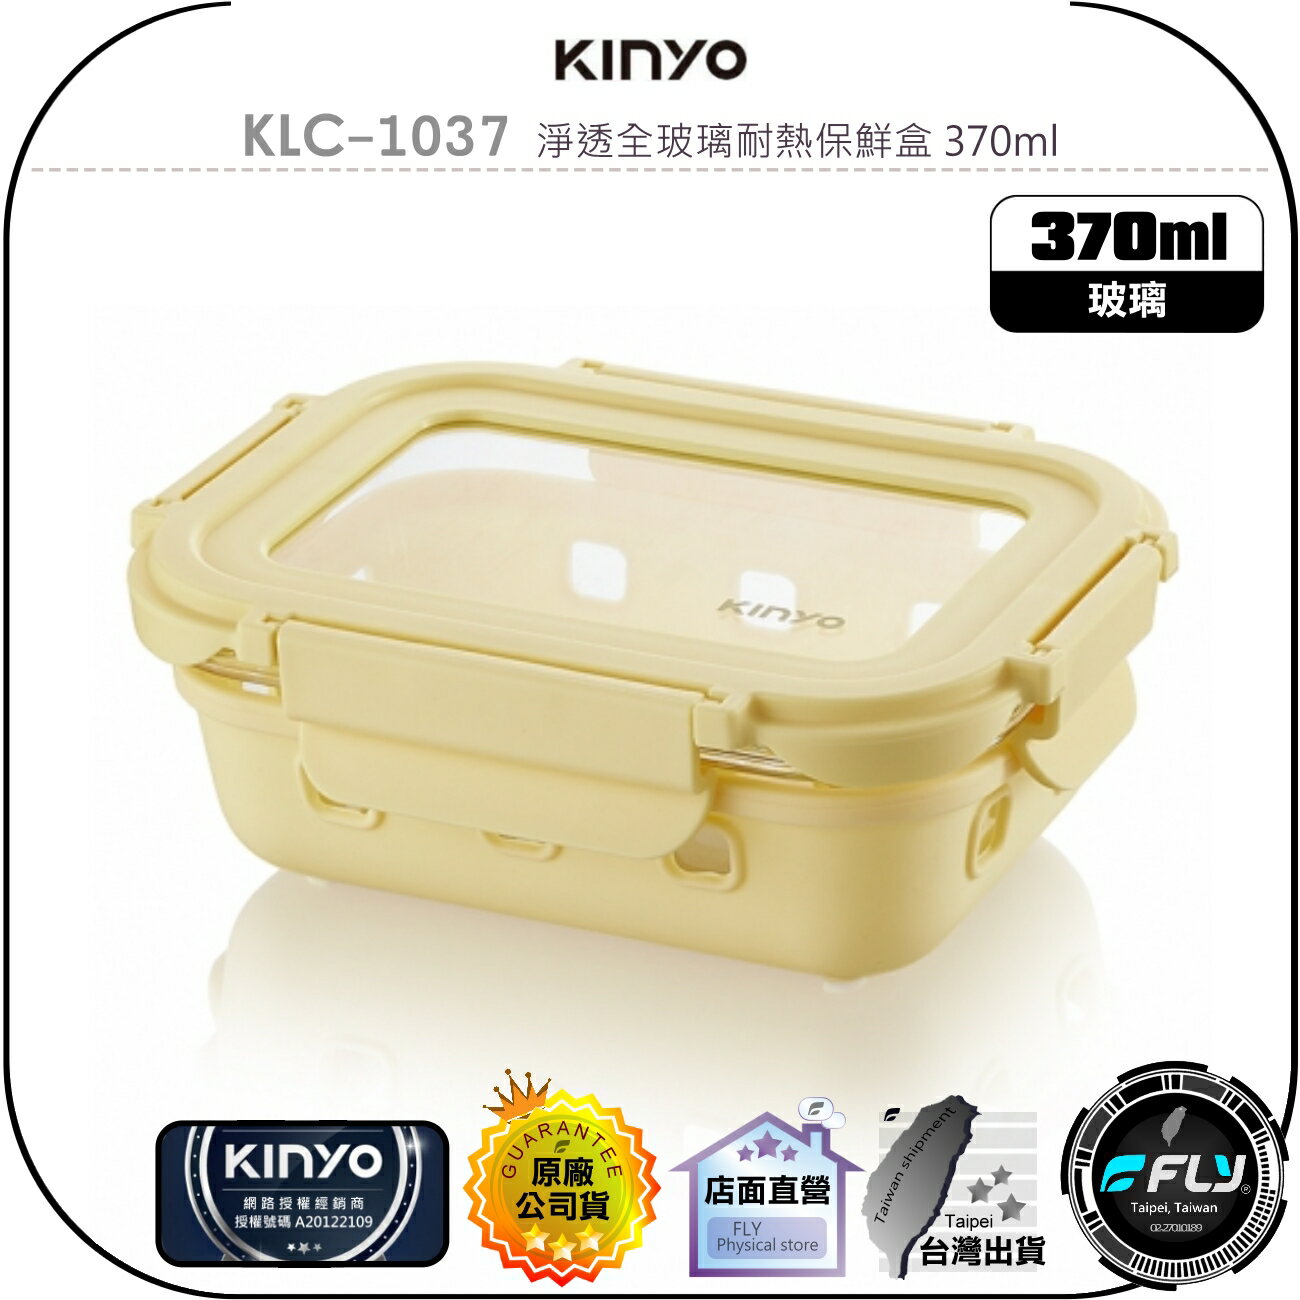 【飛翔商城】KINYO 耐嘉 KLC-1037 淨透全玻璃耐熱保鮮盒 370ml◉公司貨◉適用 微波爐 烤箱 電鍋